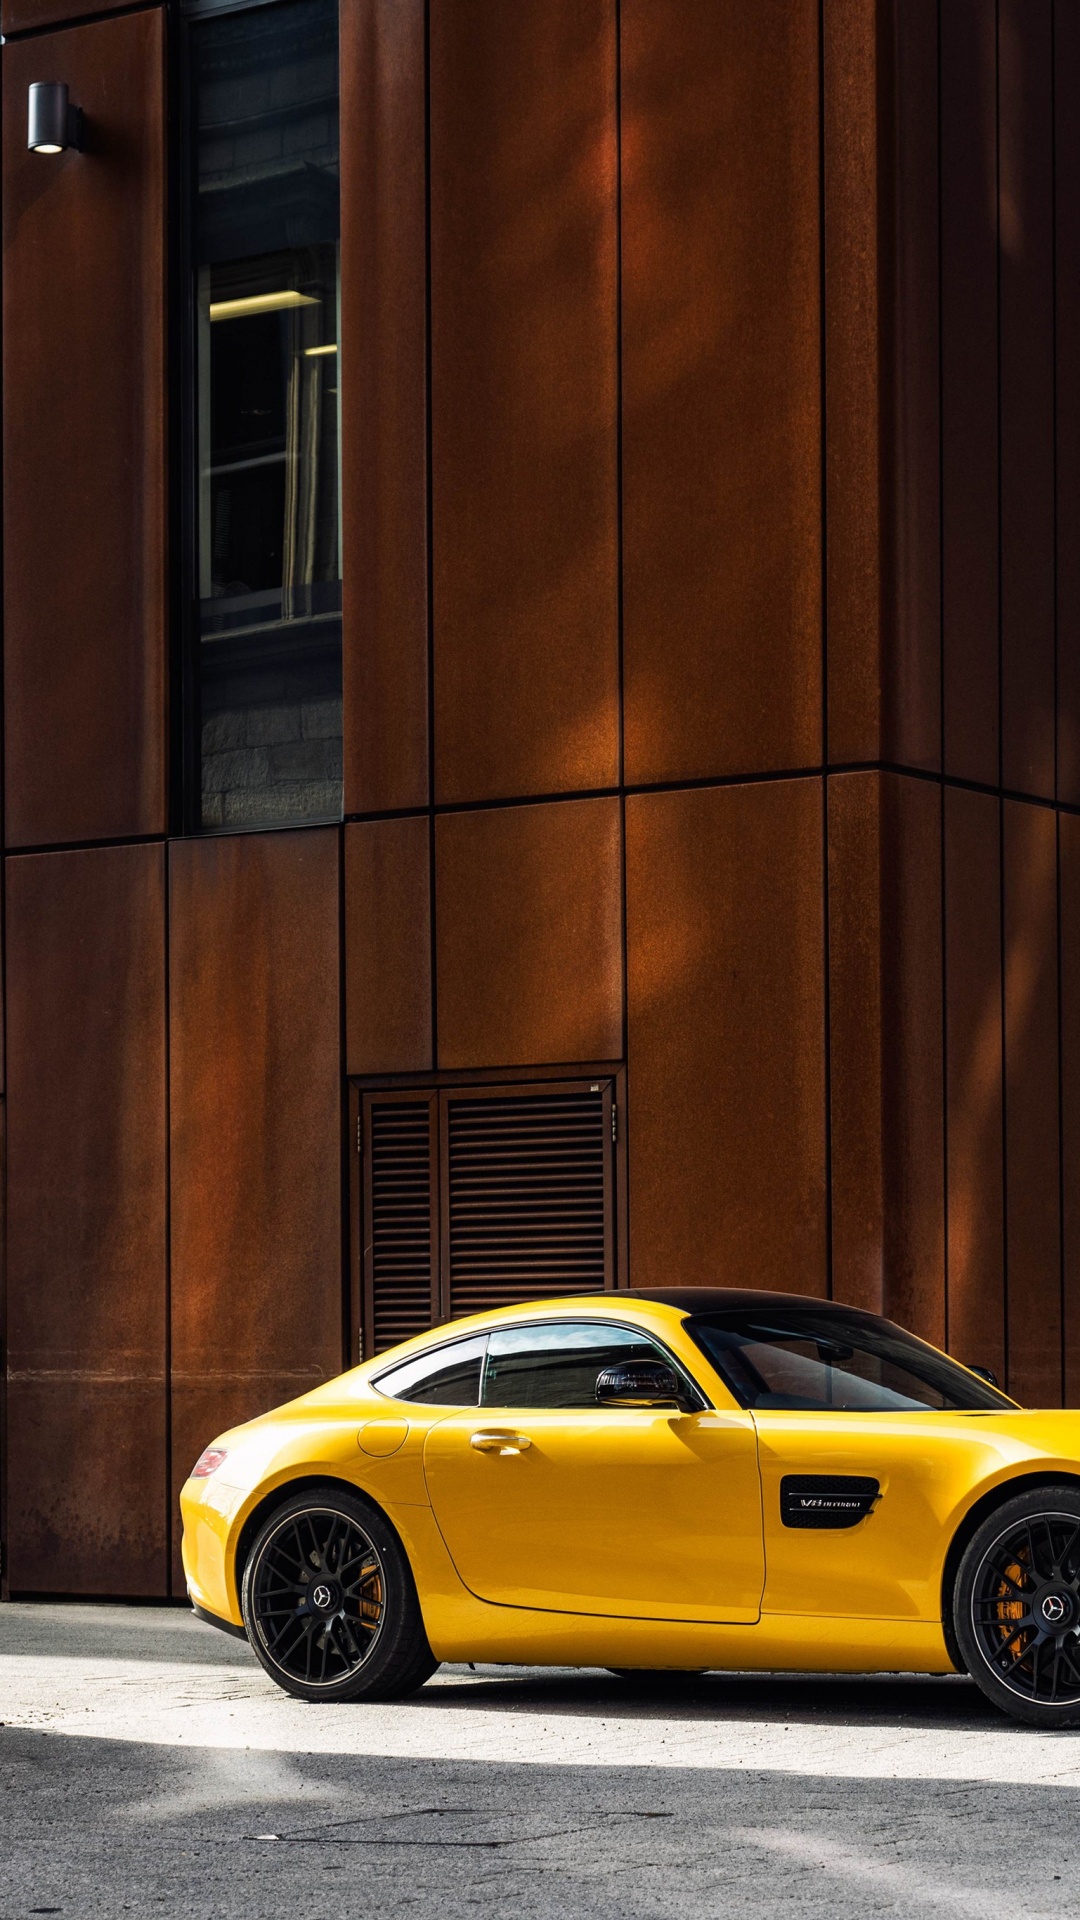 豪华旅行车, 黄色的, 奔驰amg, 梅赛德斯-奔驰s级, 街 壁纸 1080x1920 允许